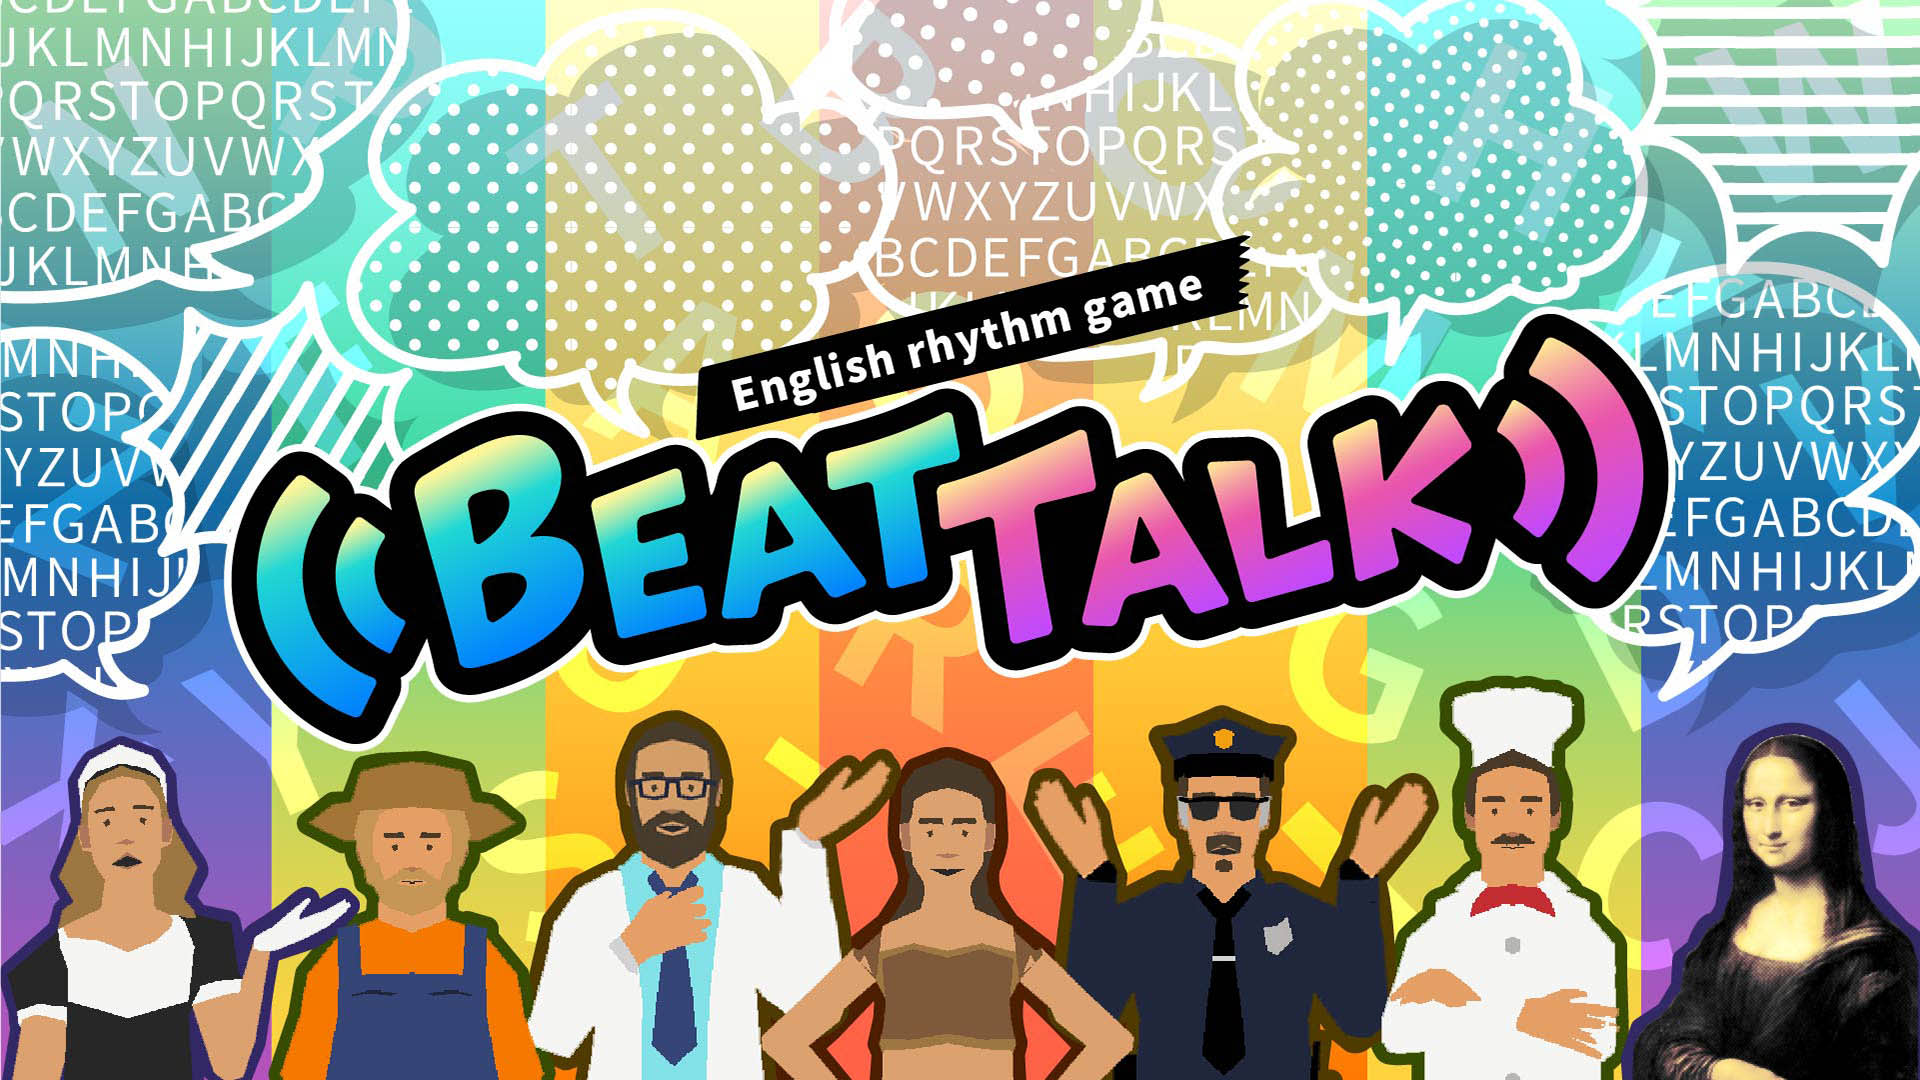 English rhythm game BeatTalk